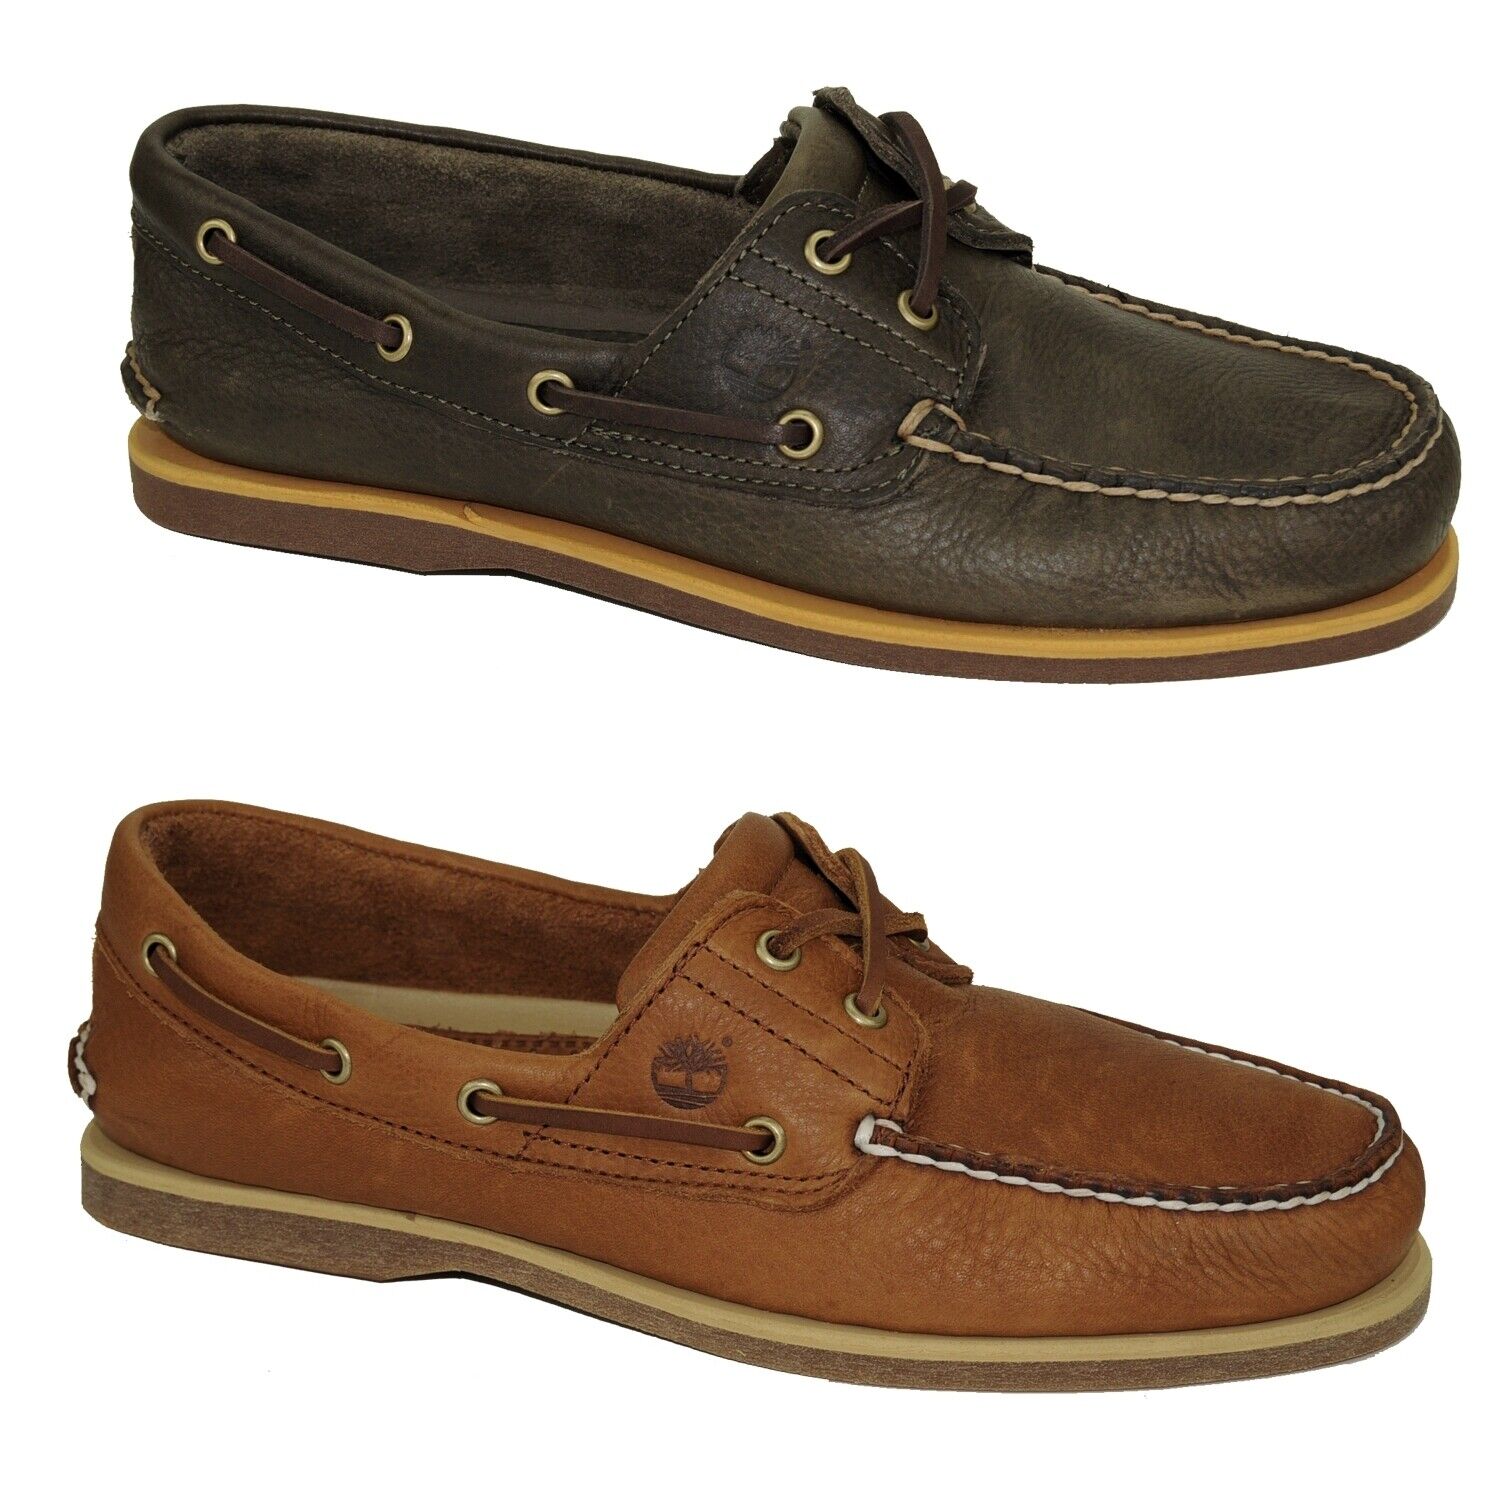 Timberland Classic Boat Shoes 2-Eye Deckschuhe Segelschuhe Herren Schuhe Modell- Farbe A2AFN - Braun Schuhgröße EUR 43 US 9